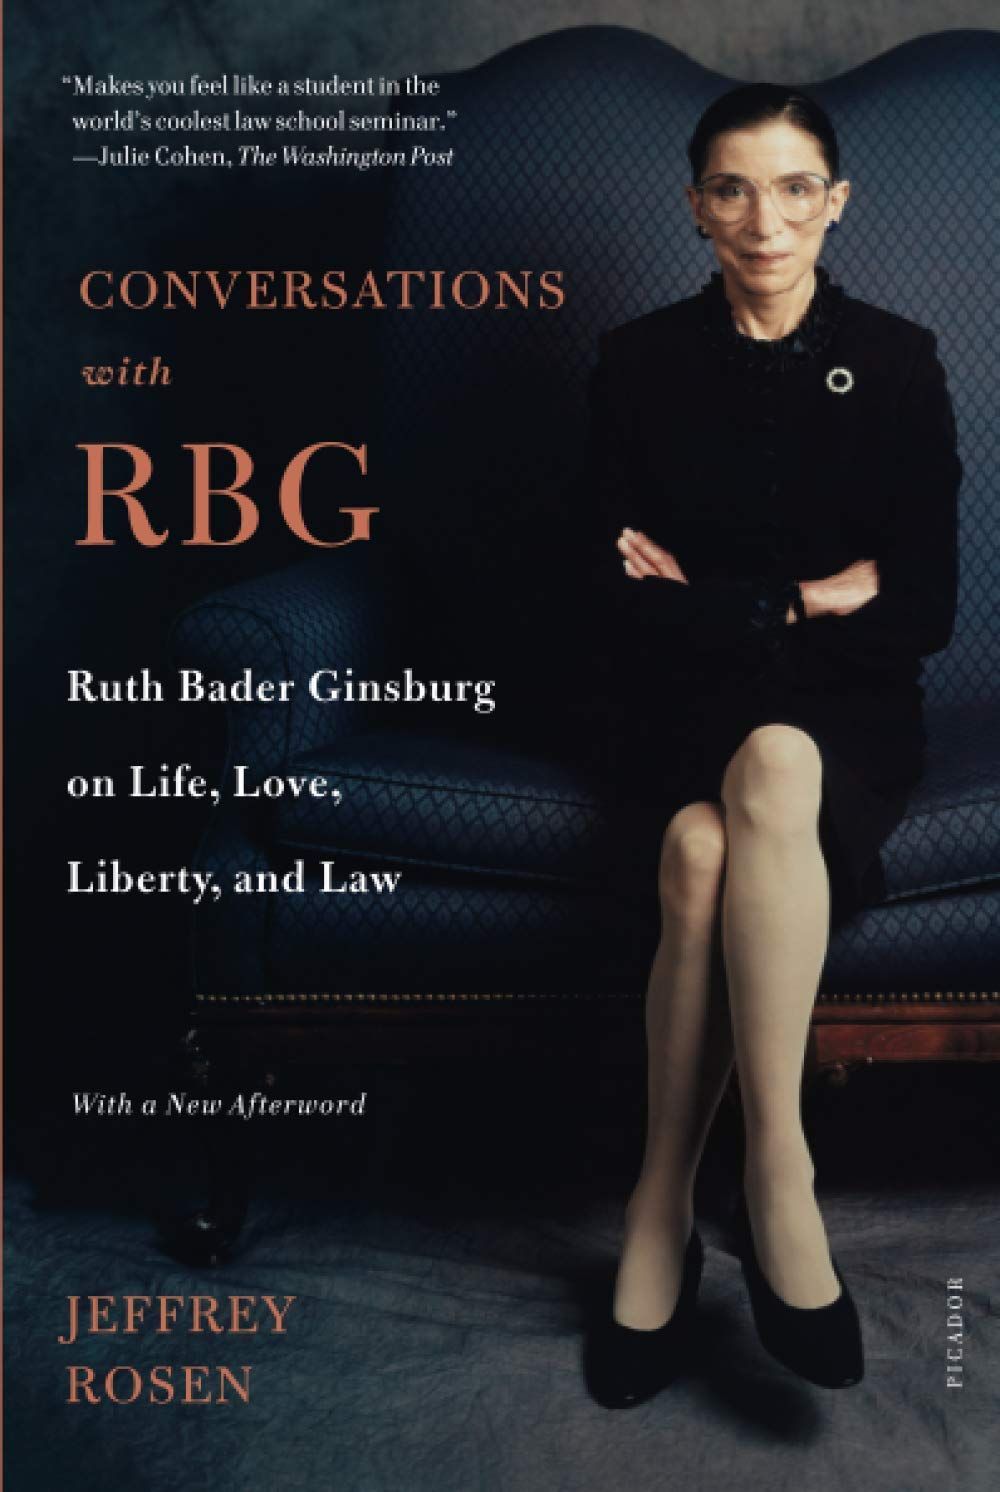 Pursuing Justice: Still Listening to Justice Ruth Bader Ginsburg